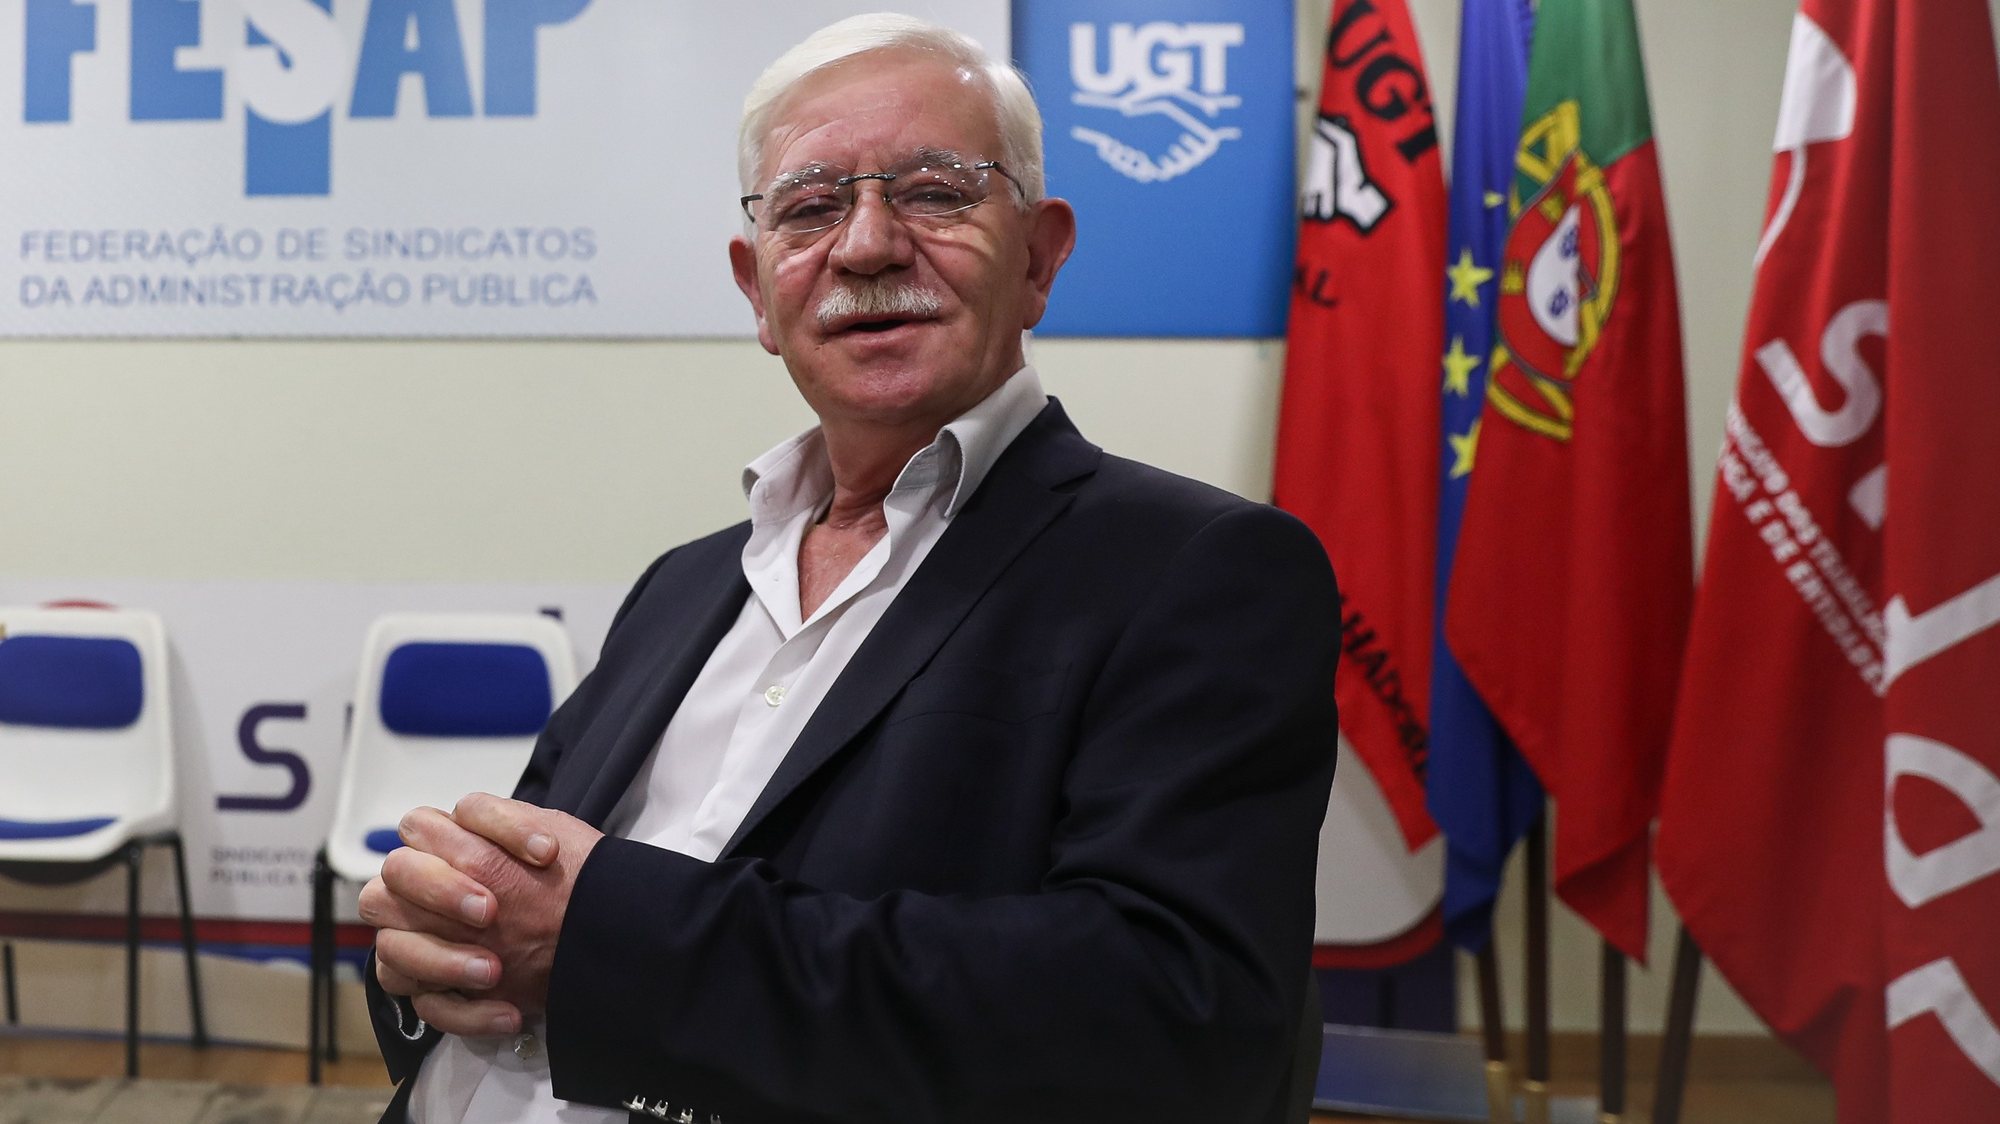 José Abraão, candidato à liderança da UGT